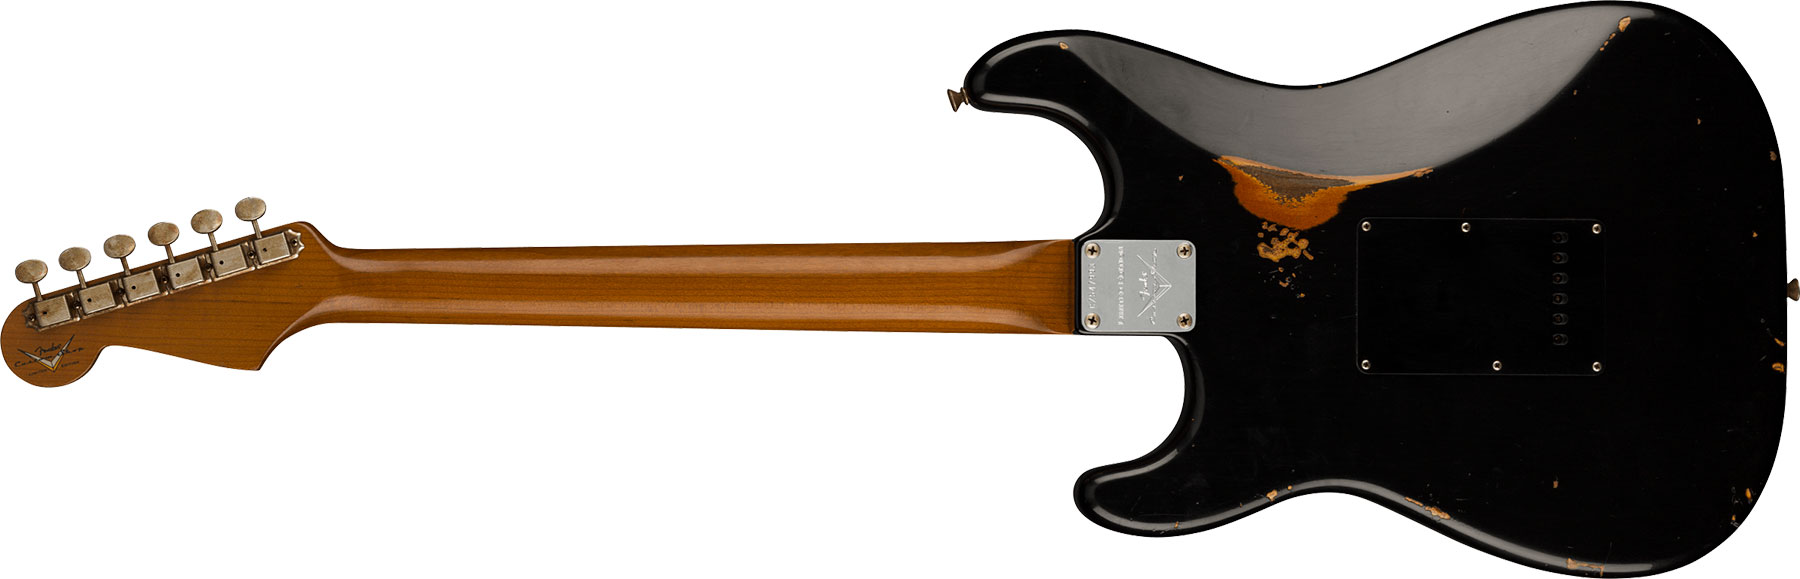 Fender Custom Shop Strat Dual Mag Ii Ltd Usa 3s Trem Rw - Relic Black Over 3-color Sunburst - Elektrische gitaar in Str-vorm - Variation 1